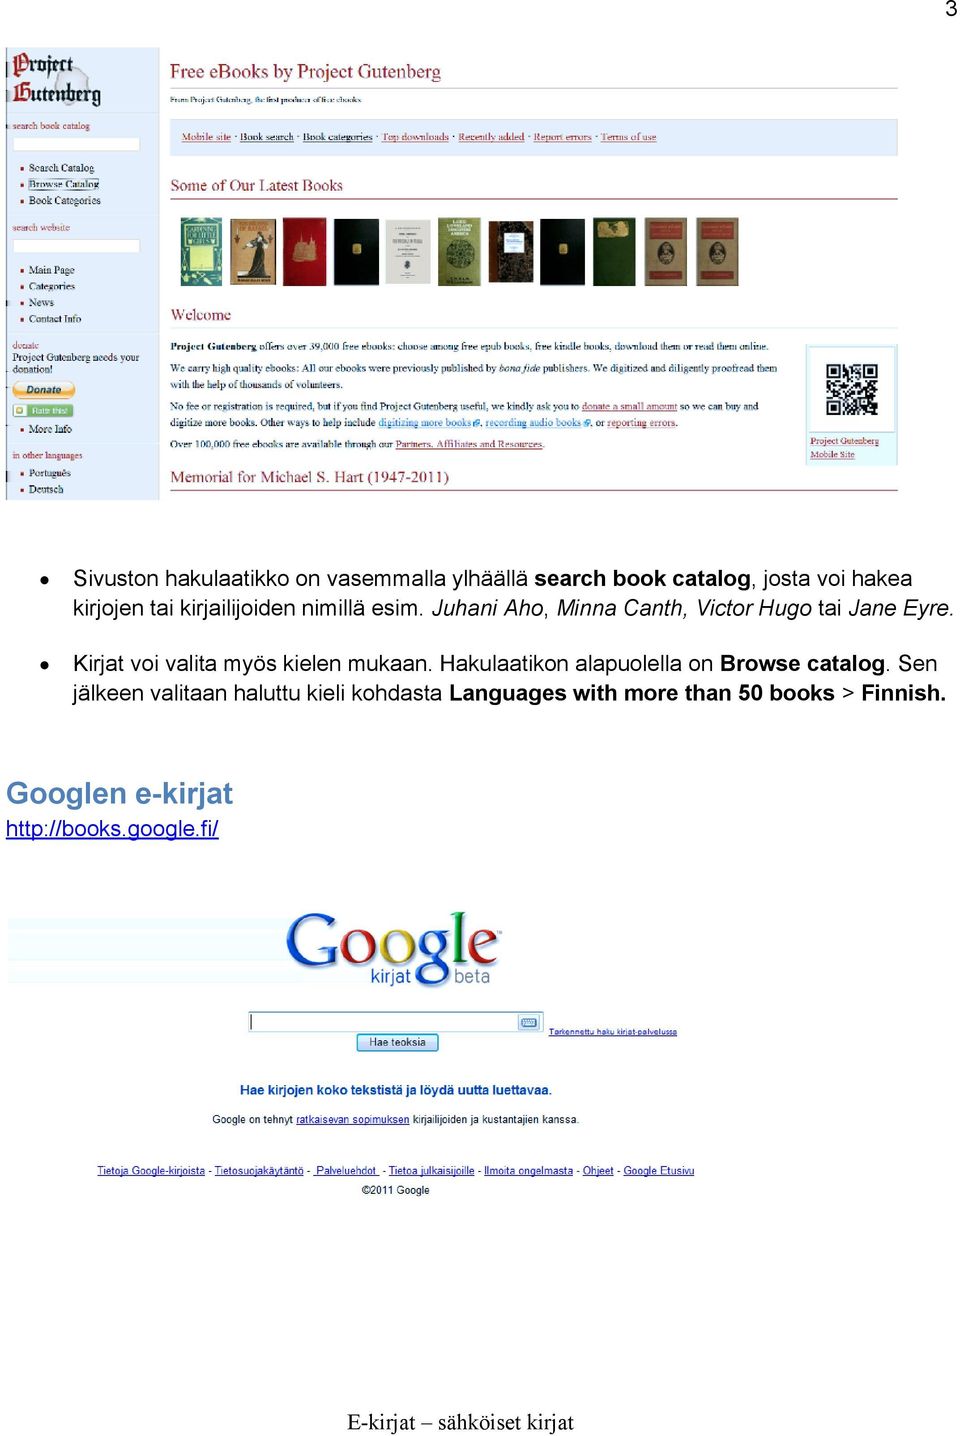 Kirjat voi valita myös kielen mukaan. Hakulaatikon alapuolella on Browse catalog.